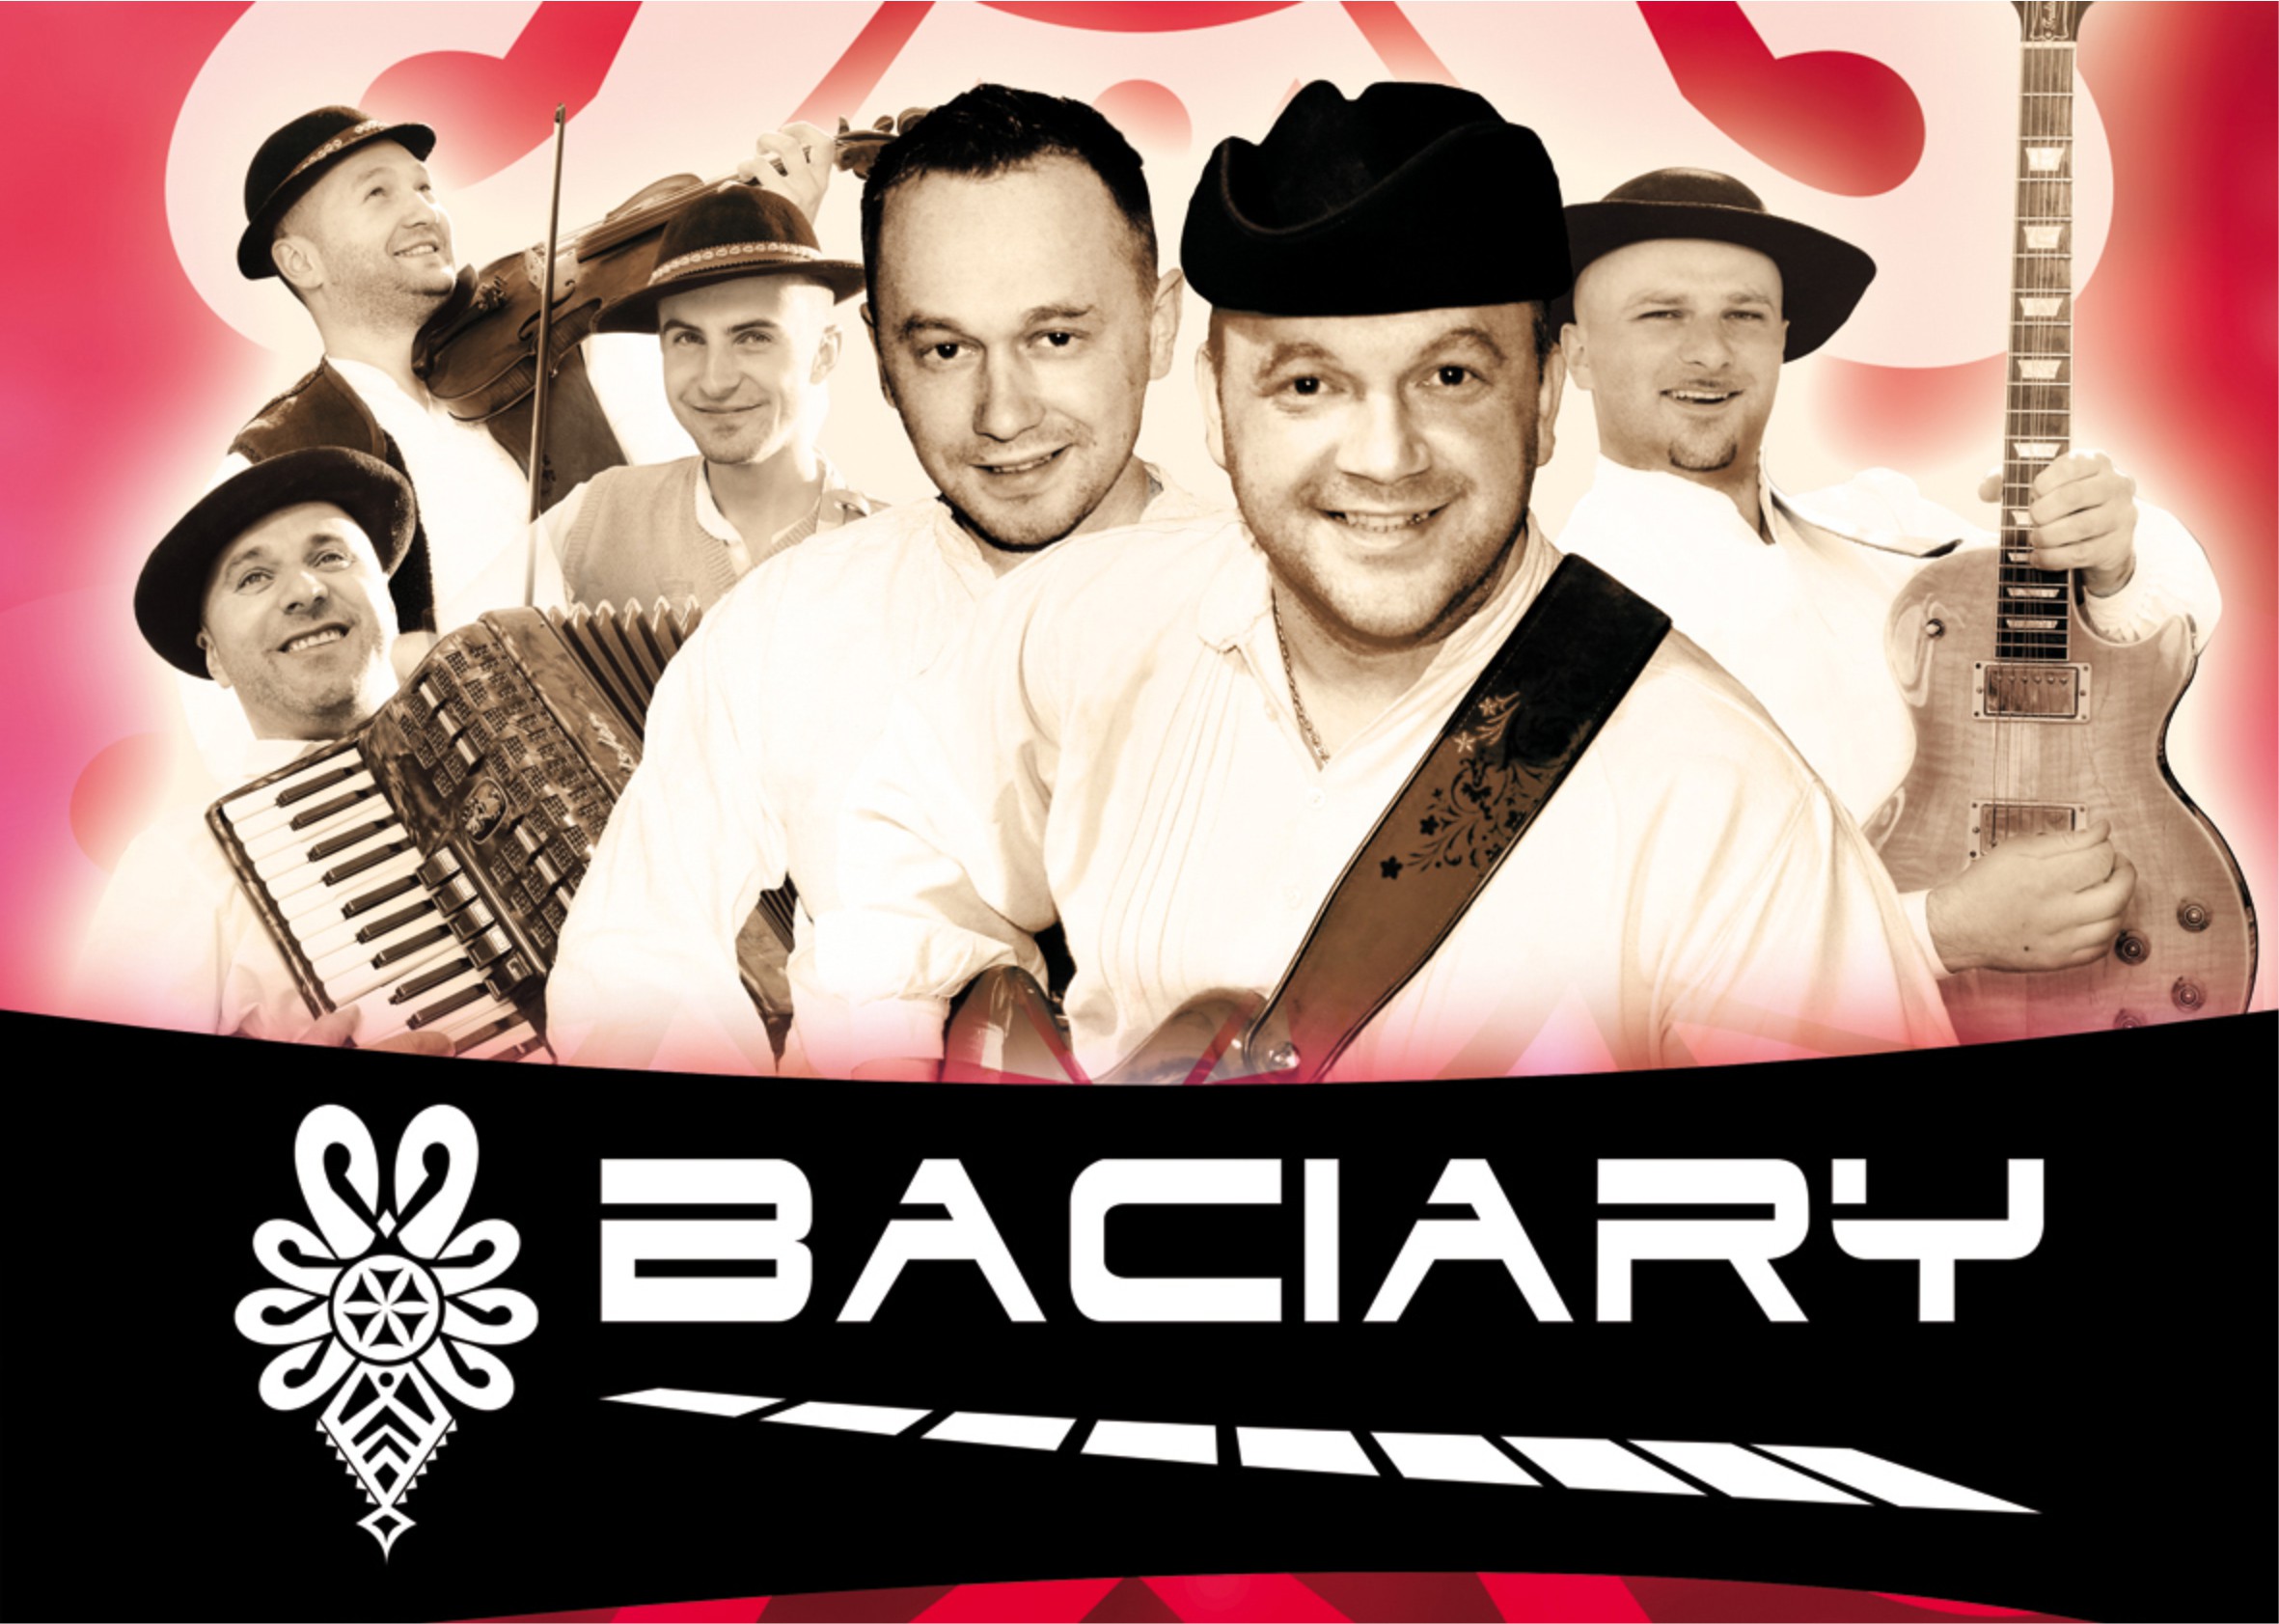 banerze zdjęciami członków zespołu Baciary